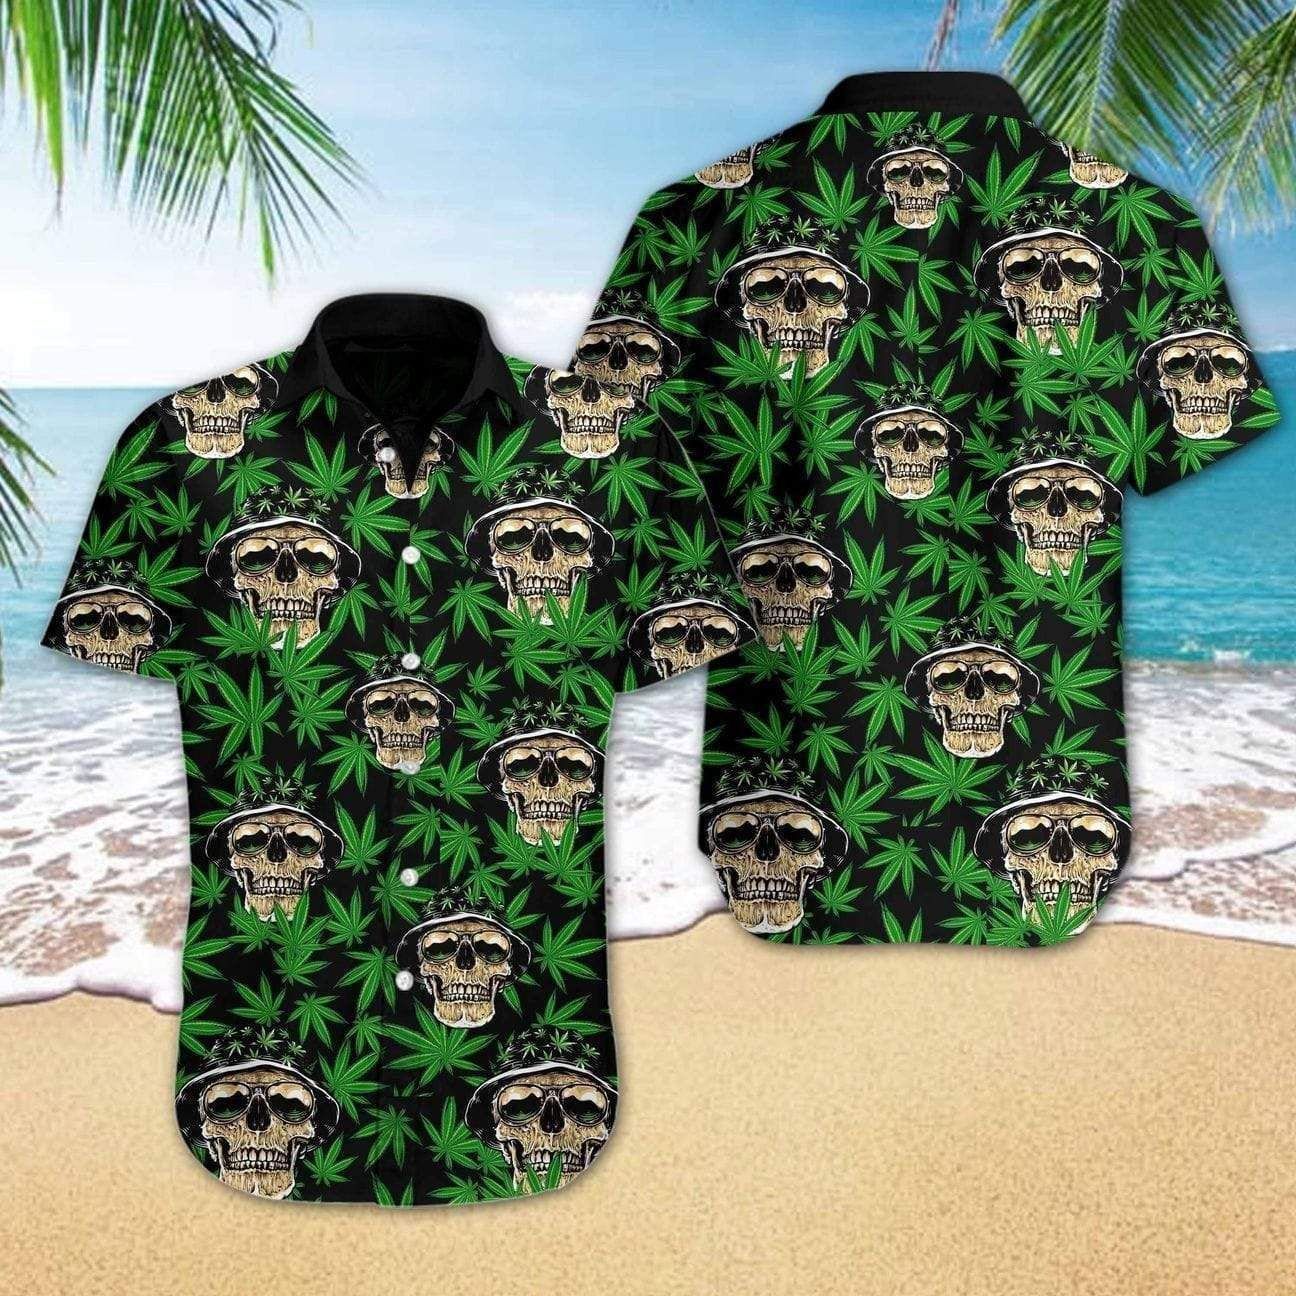 Mega Cool Skull Weed Cannabis Tropical Hawaiian Aloha Shirts